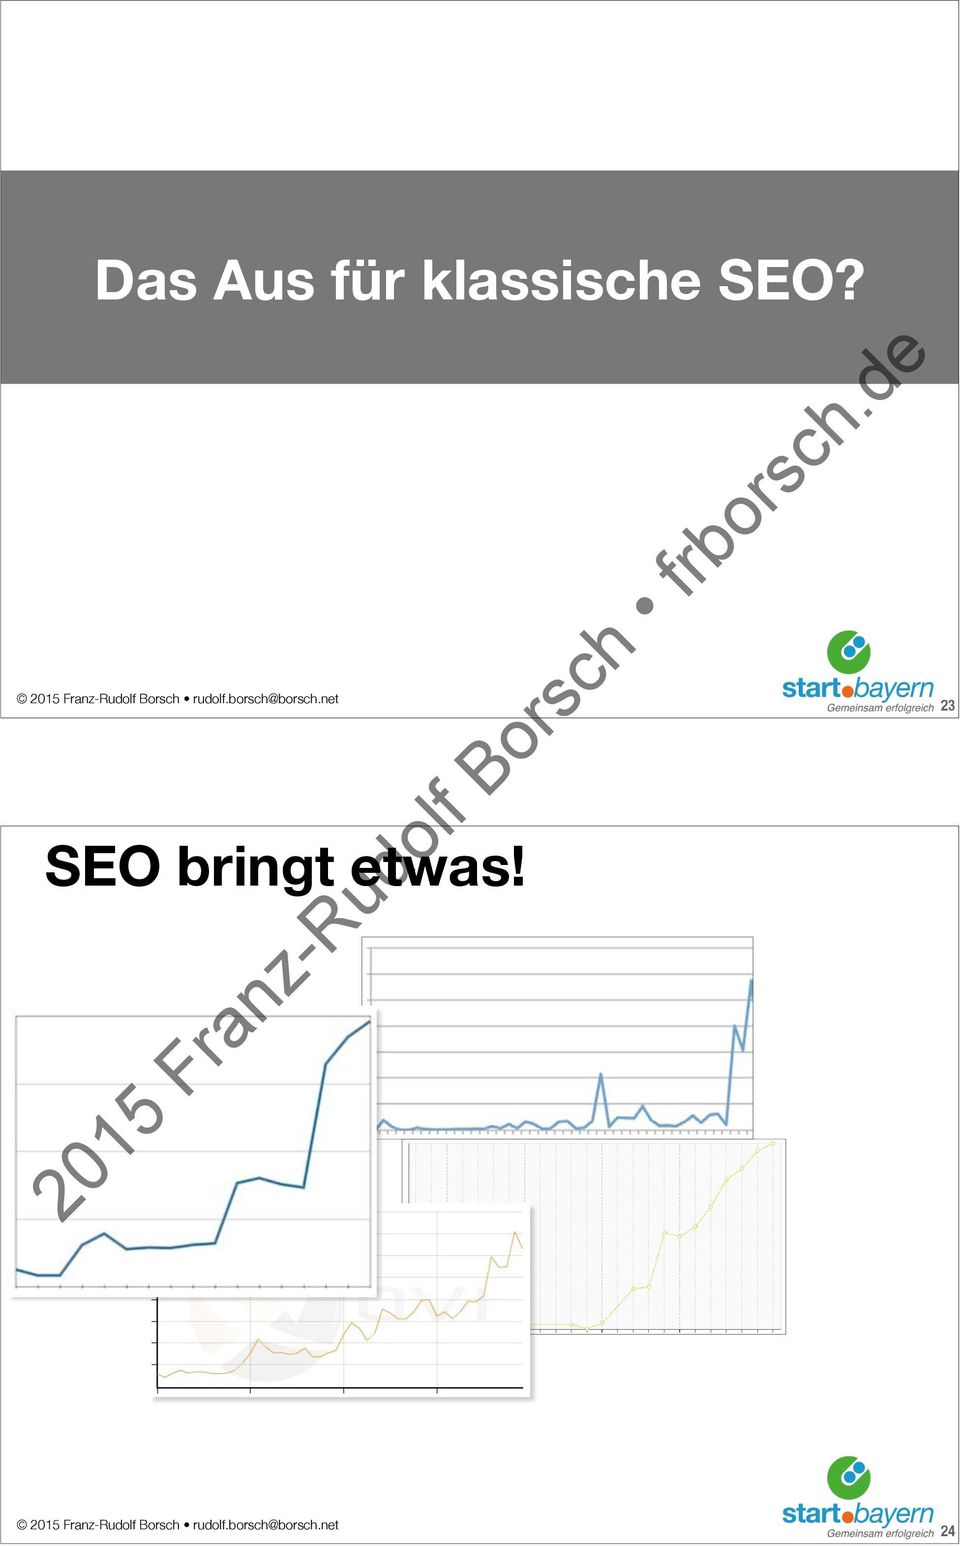 207 Hosted in Sichtbarkeits Verlauf / Online Value Index (OVI) n/a Germany Hier wird die Sichtbarkeit in den Suchmaschinen der Domain angezeigt, also die qualitativen